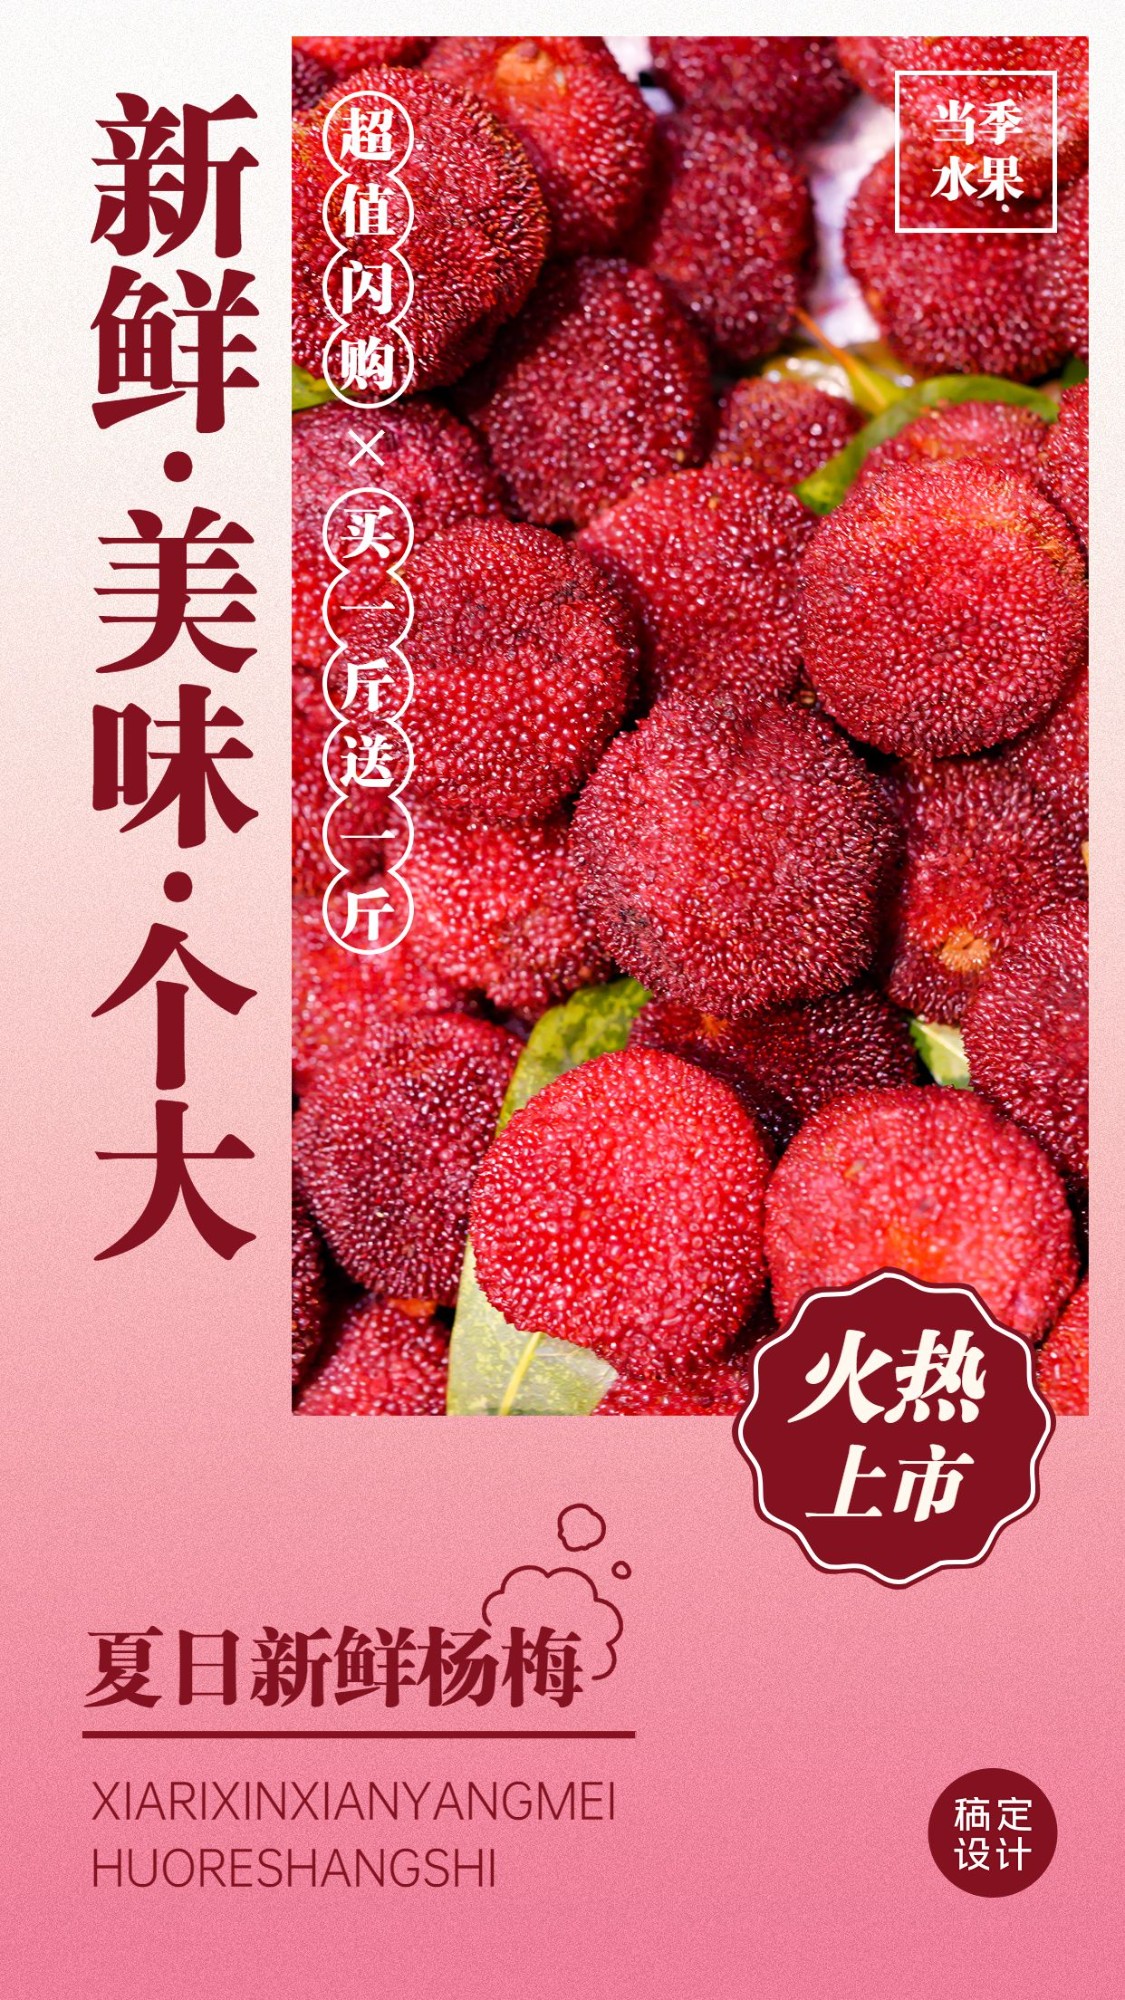 食品生鲜水果杨梅产品展示竖版海报